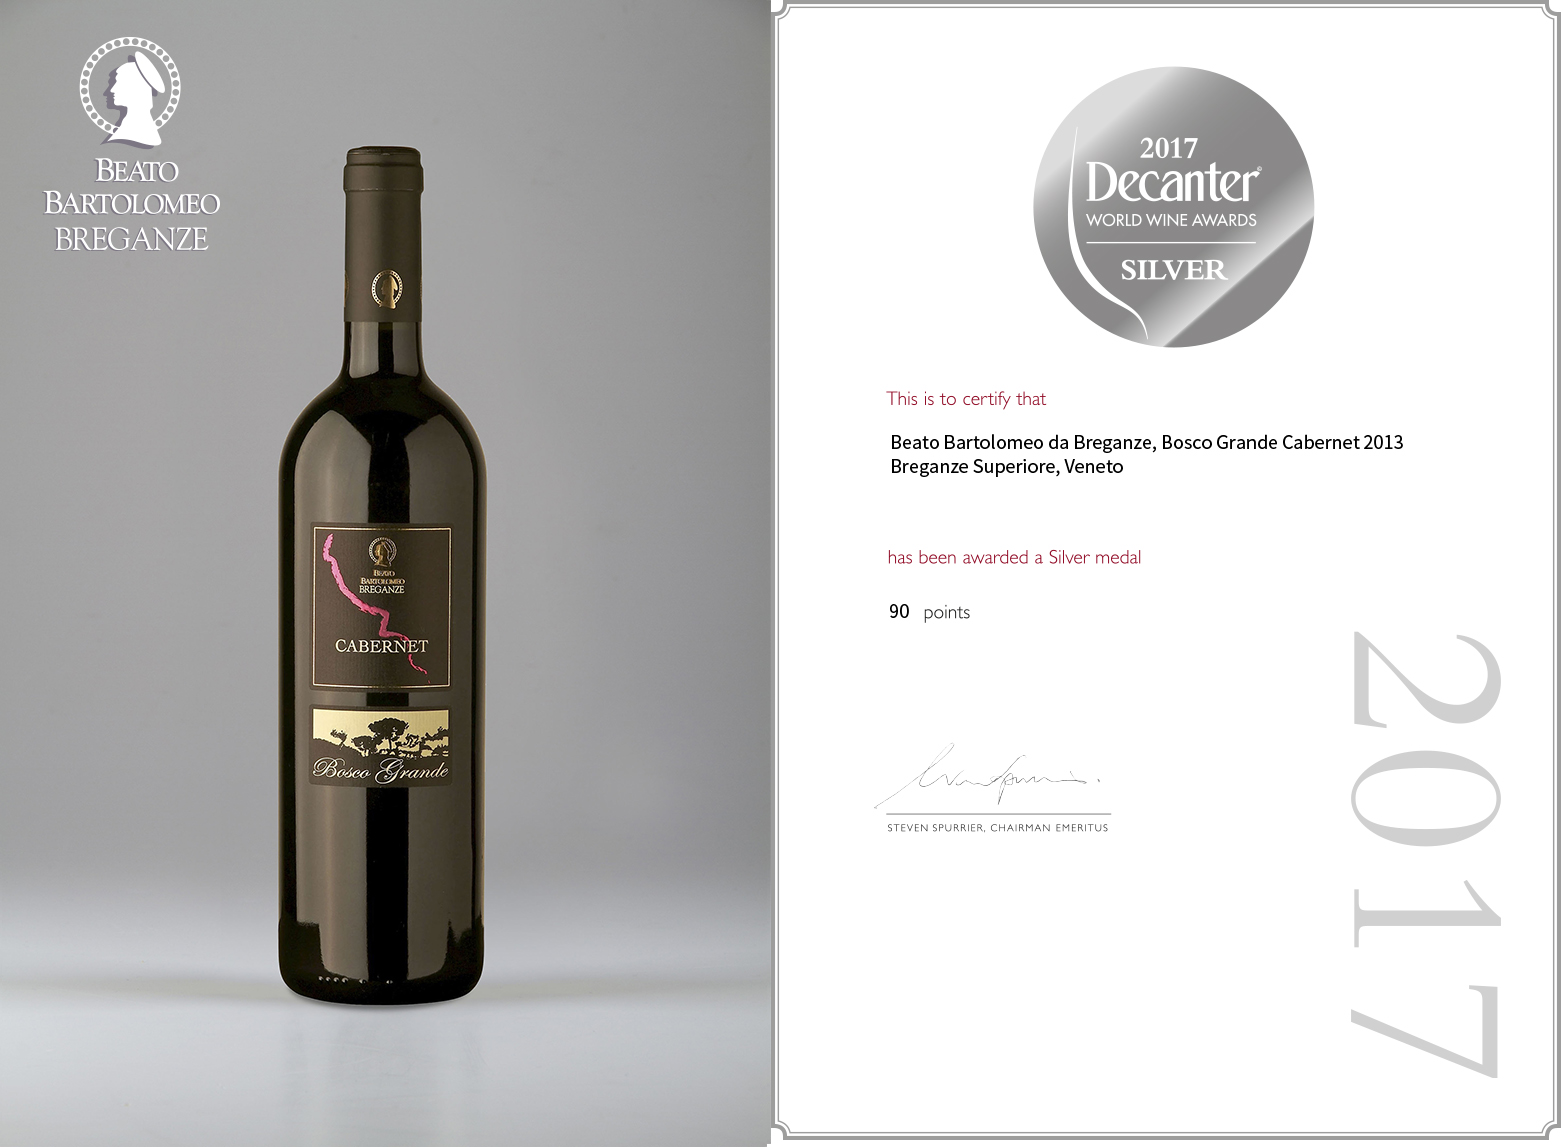 Cabernet Breganze Doc Riserva “Bosco Grande” Decanter World Wine Awards 2017